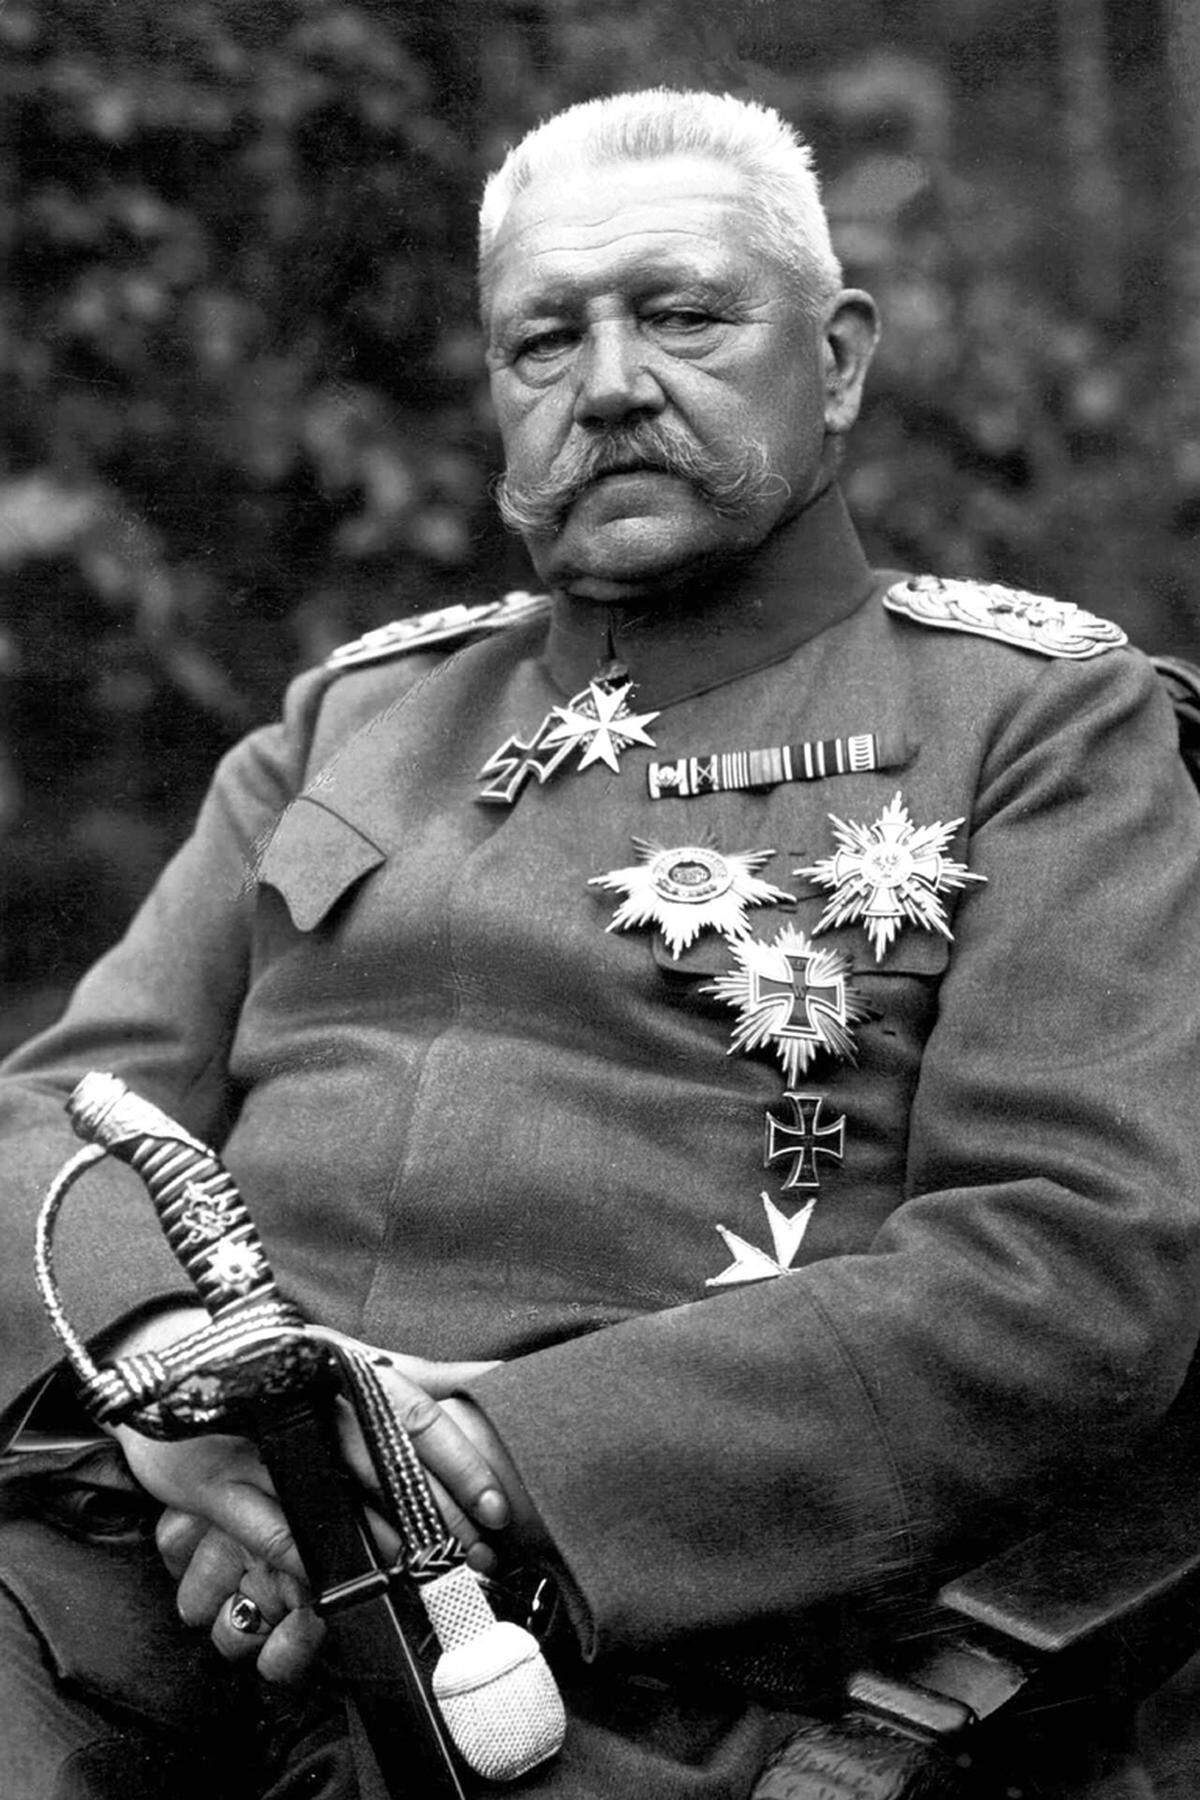 Benannt wurde das Luftschiff nach Paul von Hindenburg, einem deutschen Militär und Politiker. Im Ersten Weltkrieg stieg er zum Generalfeldmarschall auf und übte als Chef der Obersten Heeresleitung die Regierungsgewalt aus. Als zweiter Reichspräsident der Weimarer Republik ernannte er 1933 Adolf Hitler zum Reichskanzler. Hindenburg starb 1934.